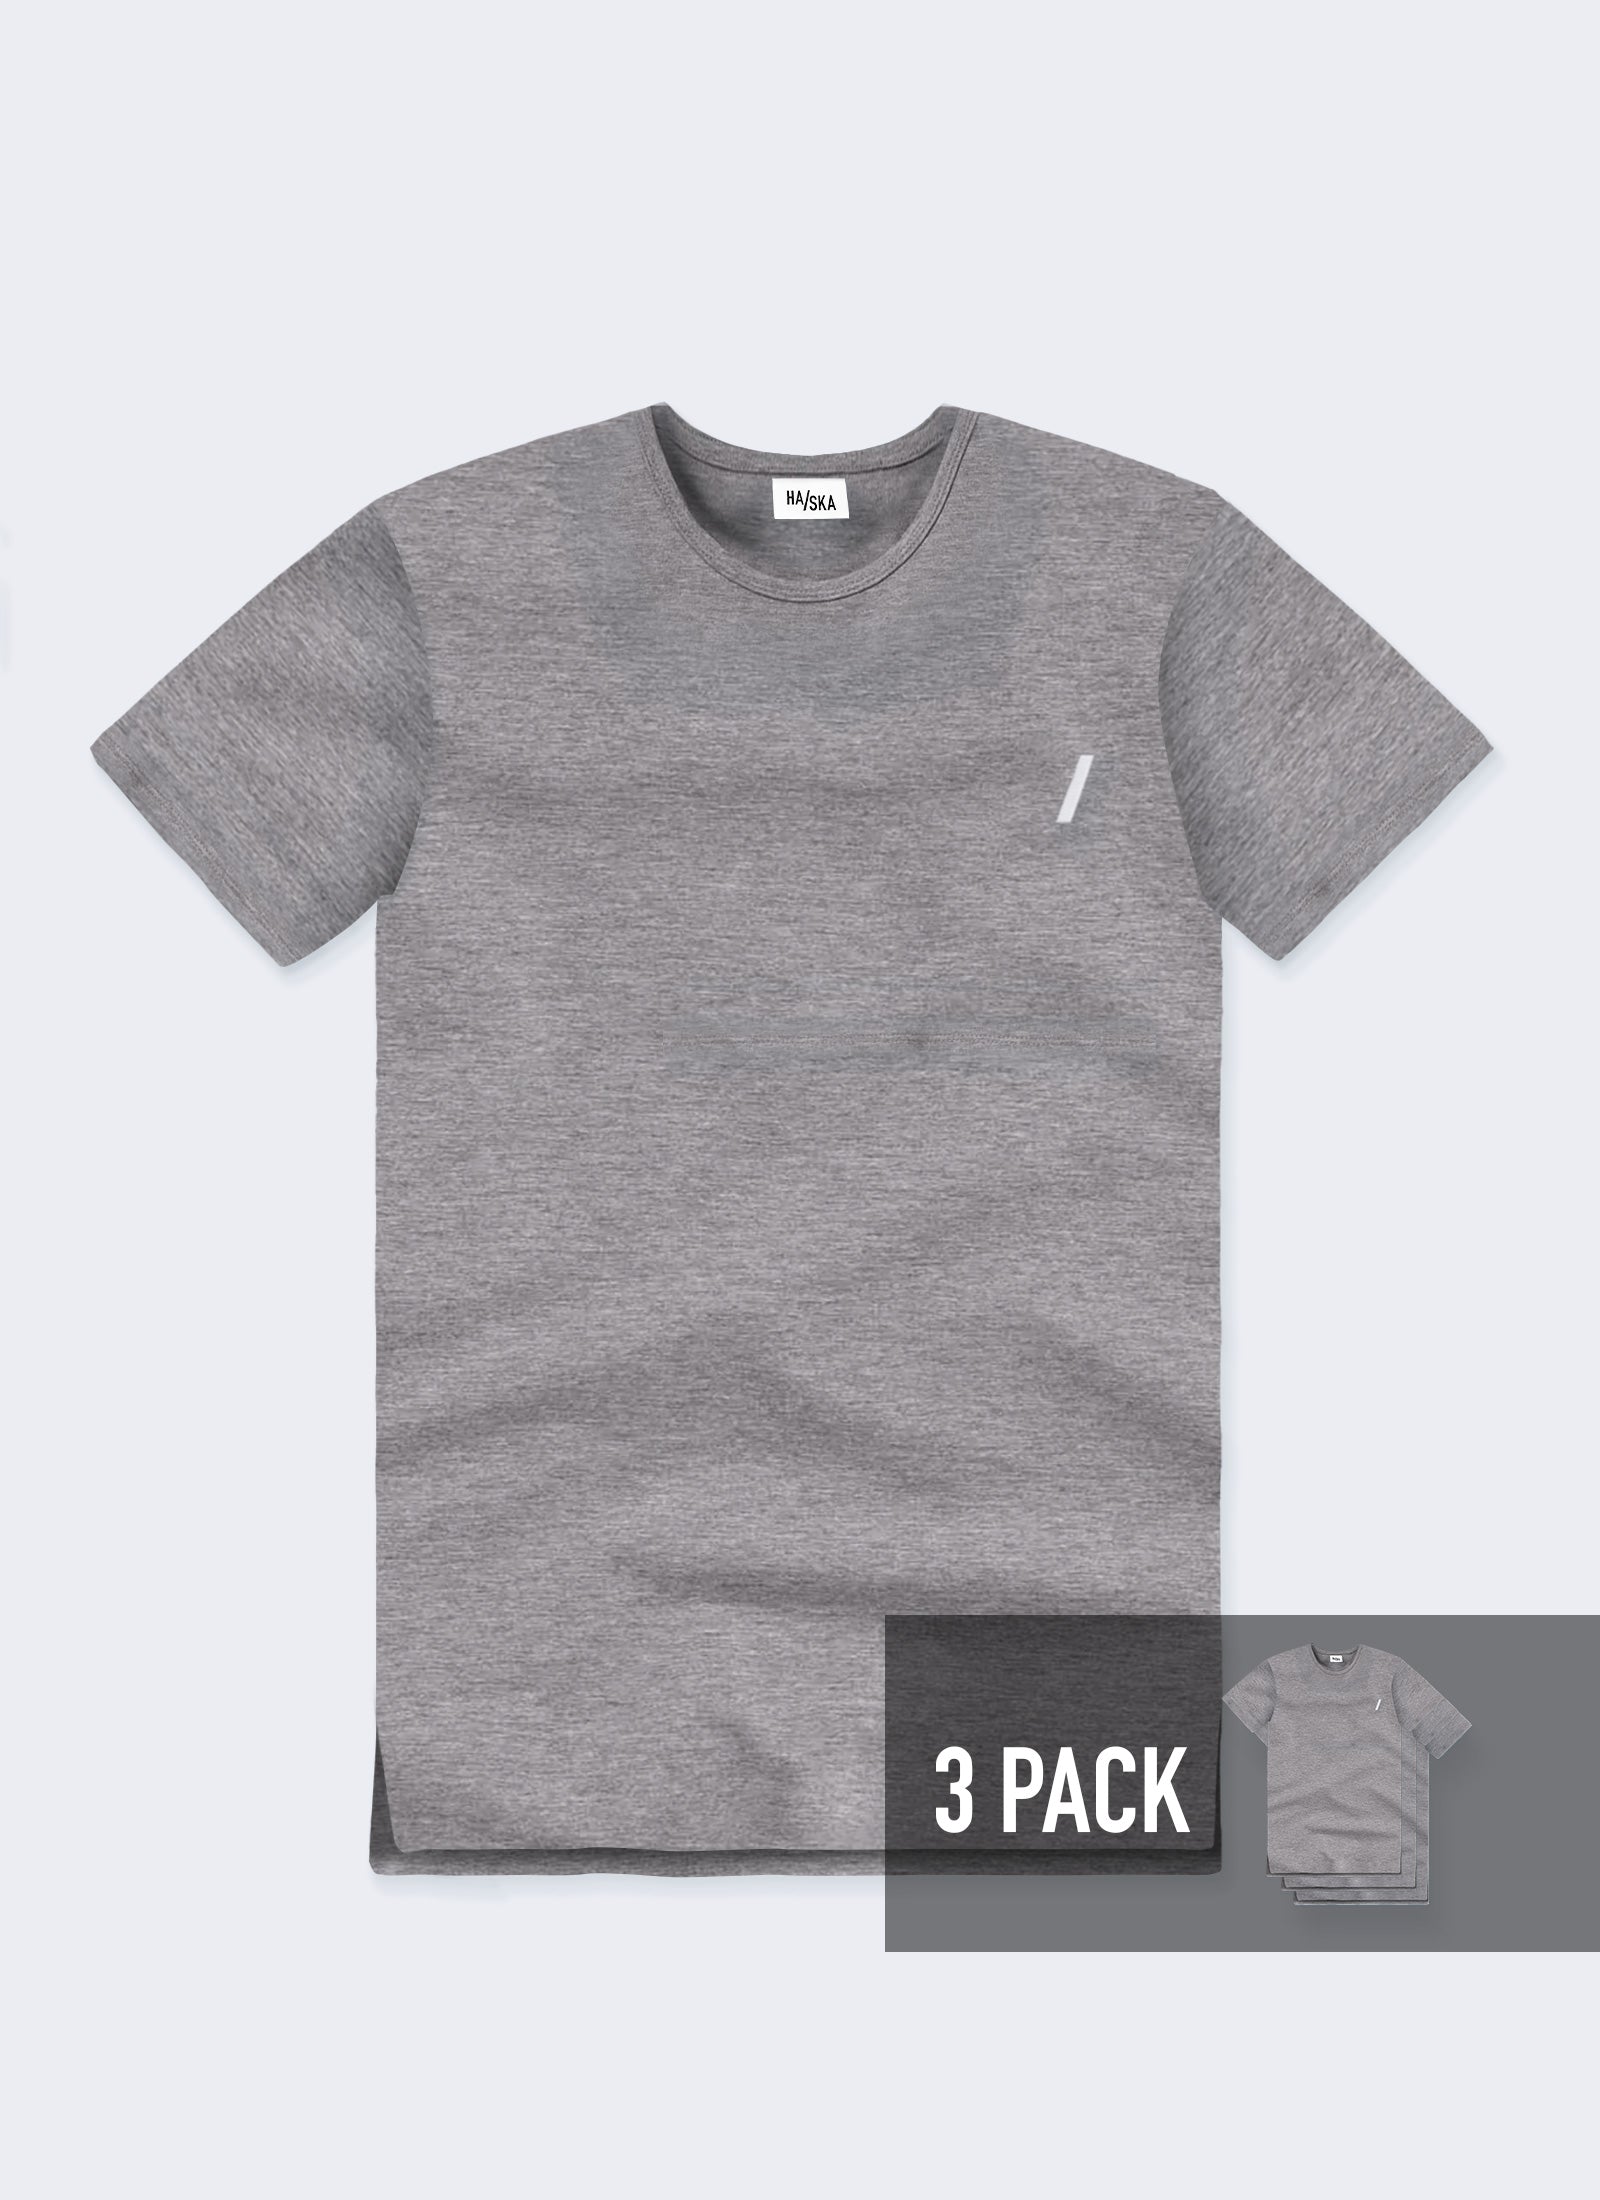 3 PACK / Modern Fit Australian-made Organic T-shirt